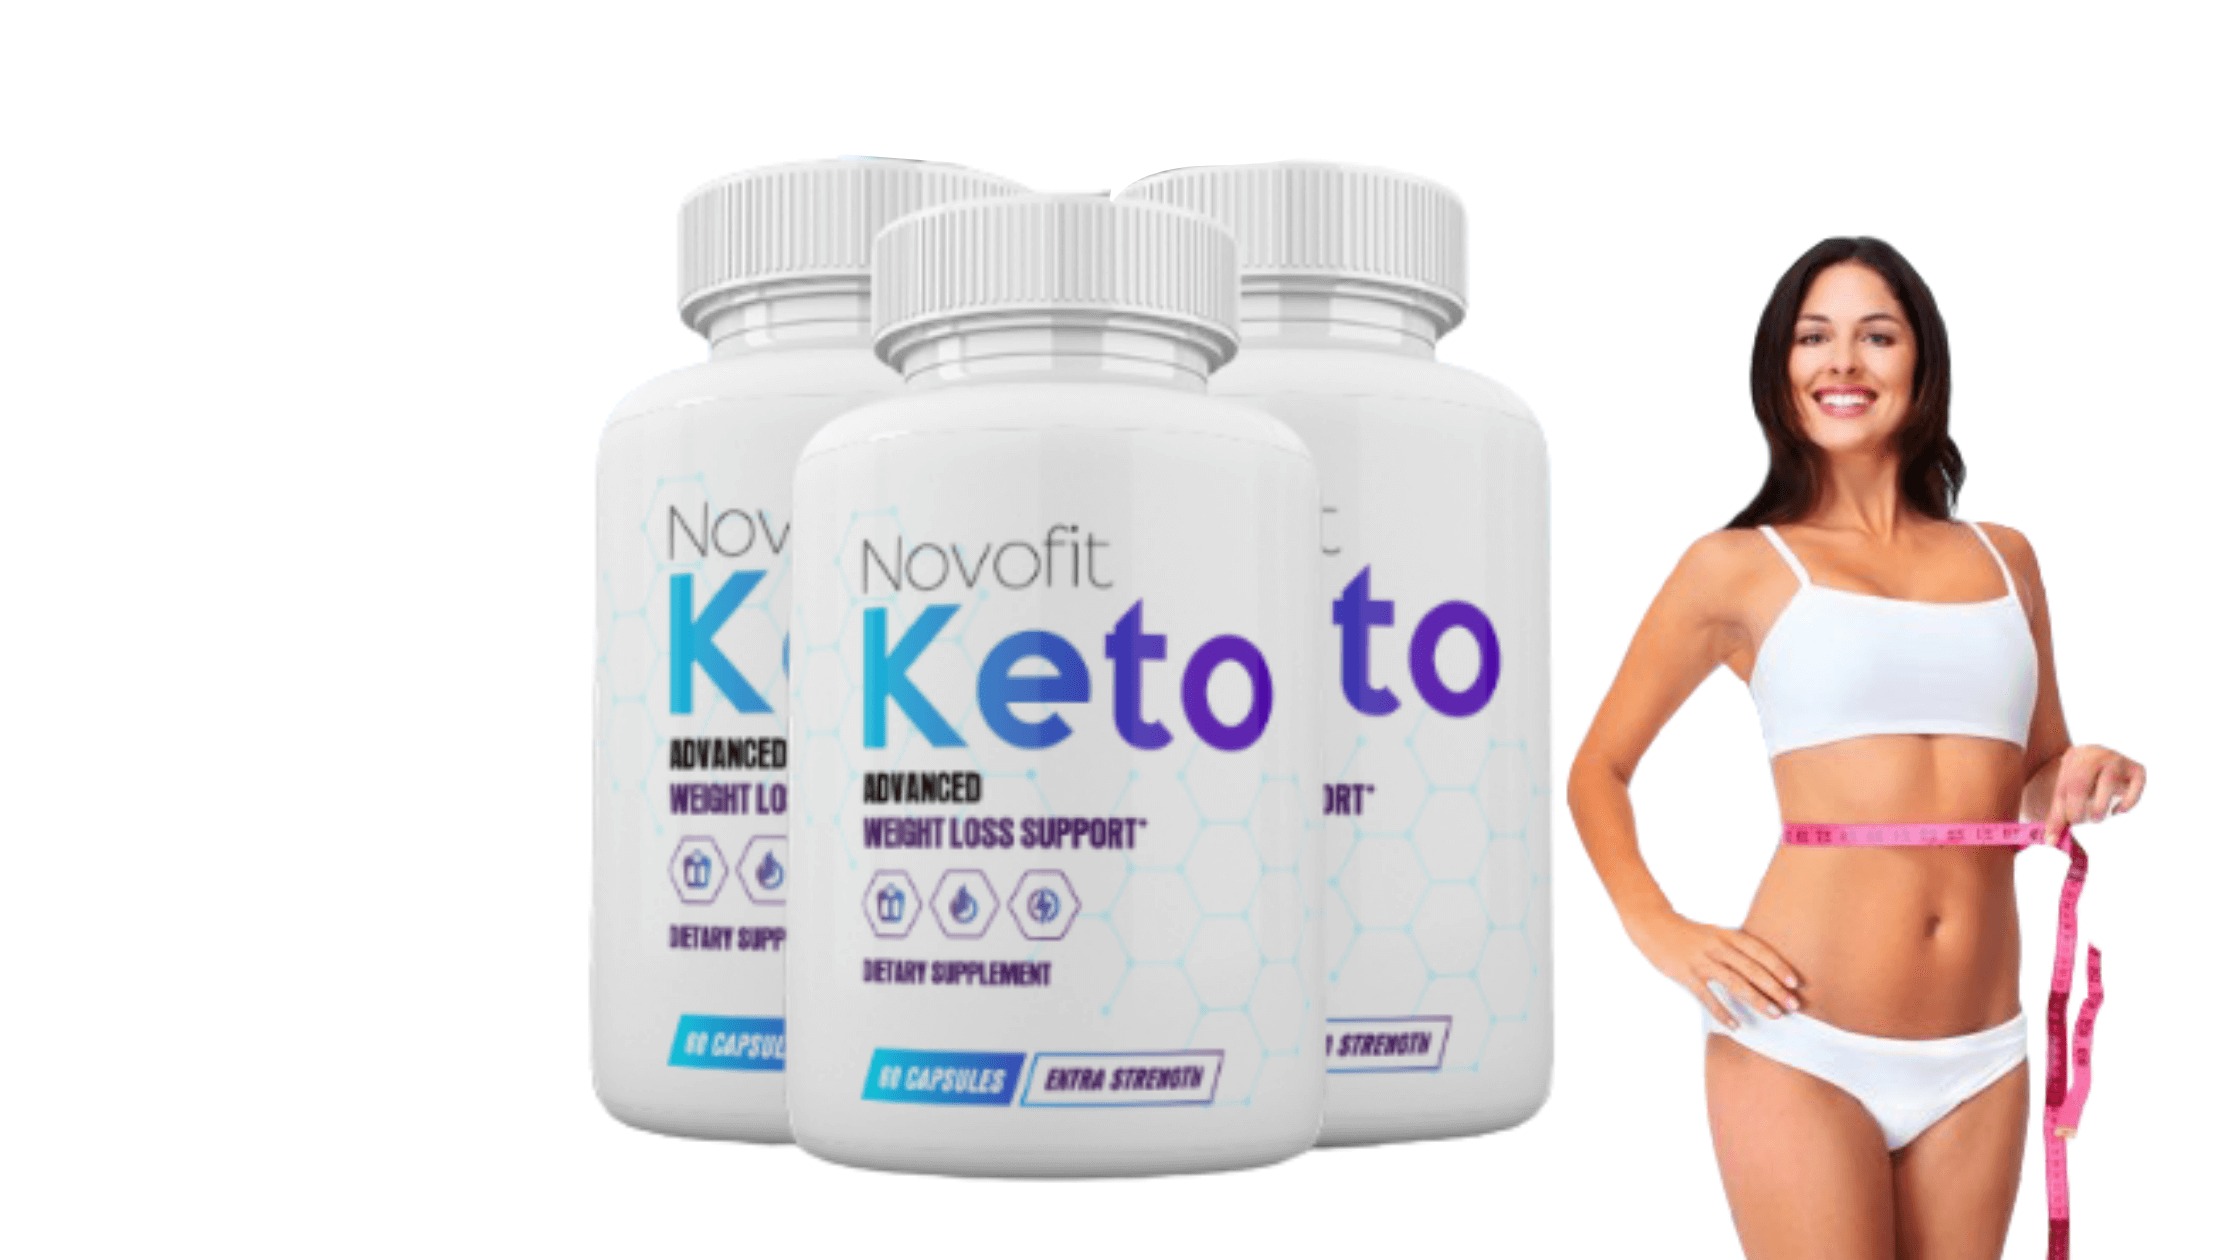 Novofit Keto Supplement